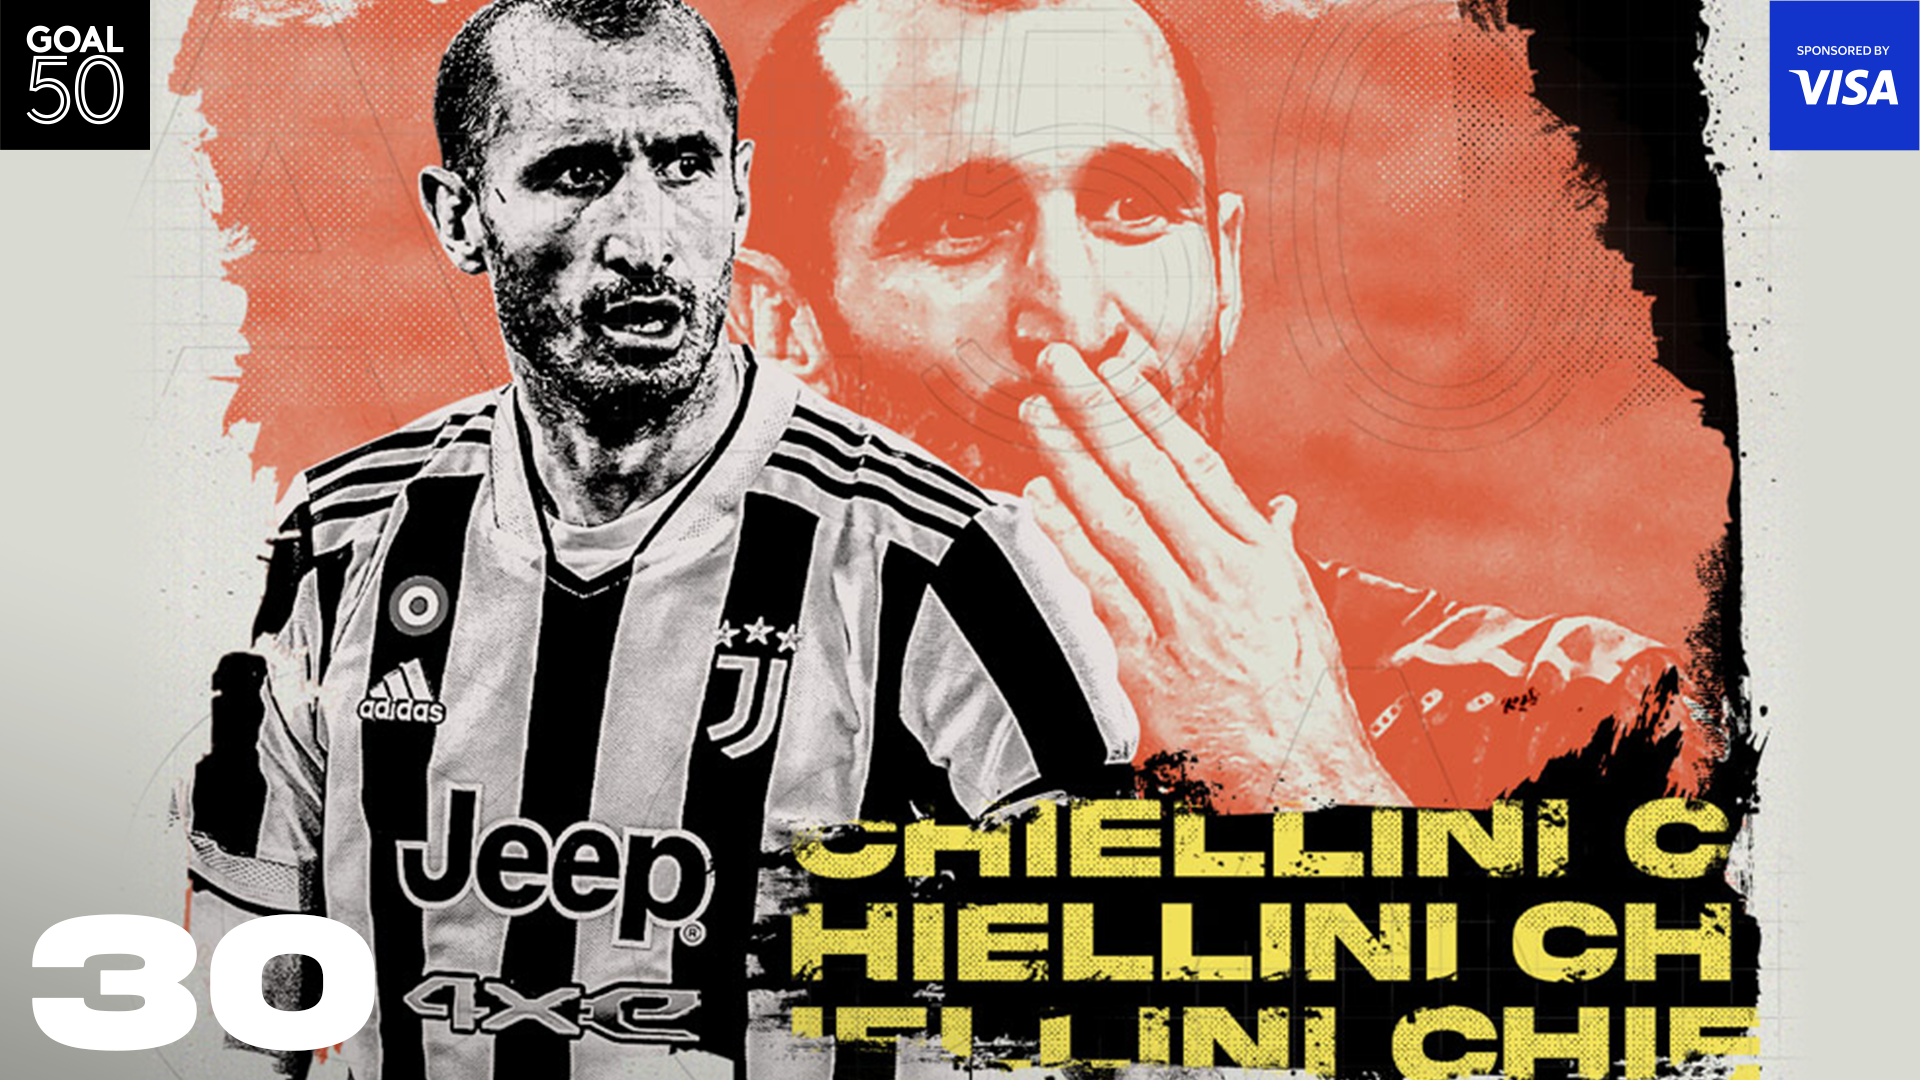 Chiellini Goal50 2021